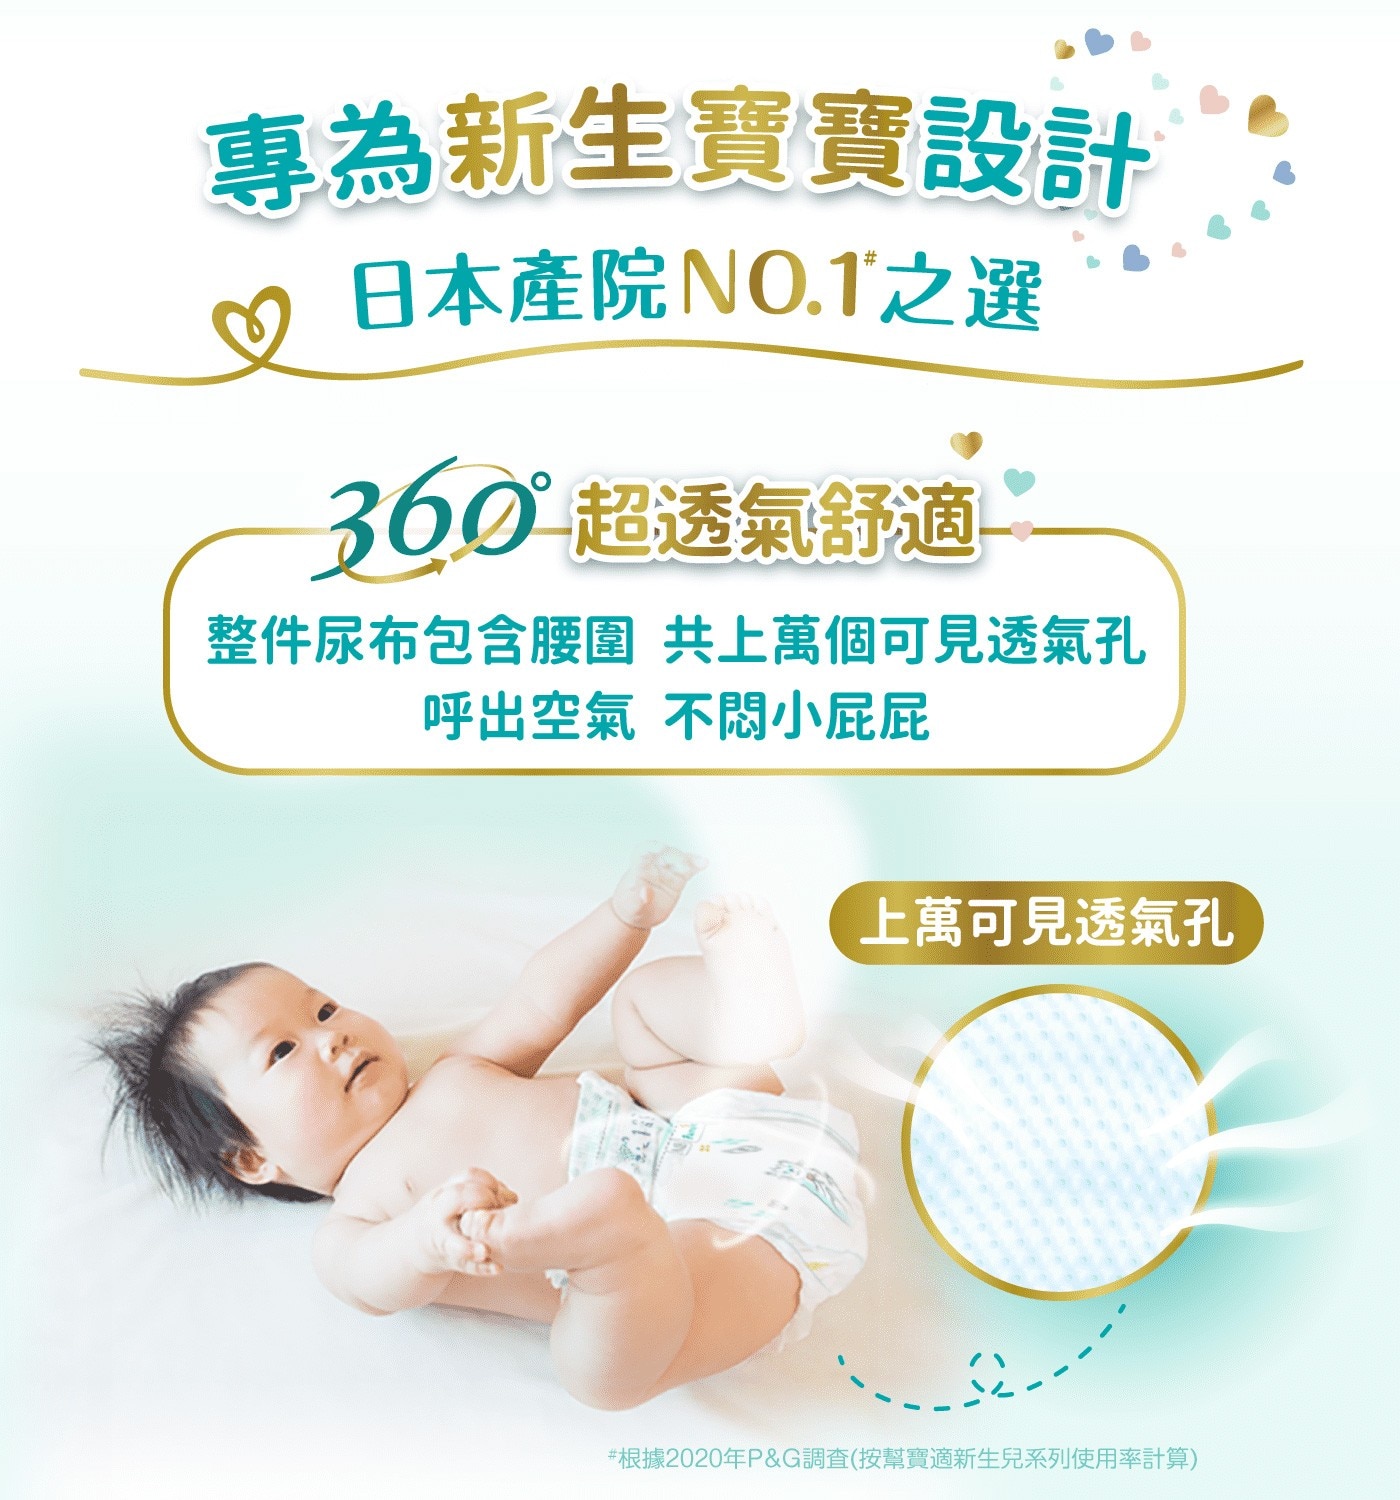 幫寶適一級幫L號專為新生寶寶設計日本產院第一首選整件尿布包含腰圍共上萬個可見透氣孔呼出空氣不悶小屁屁